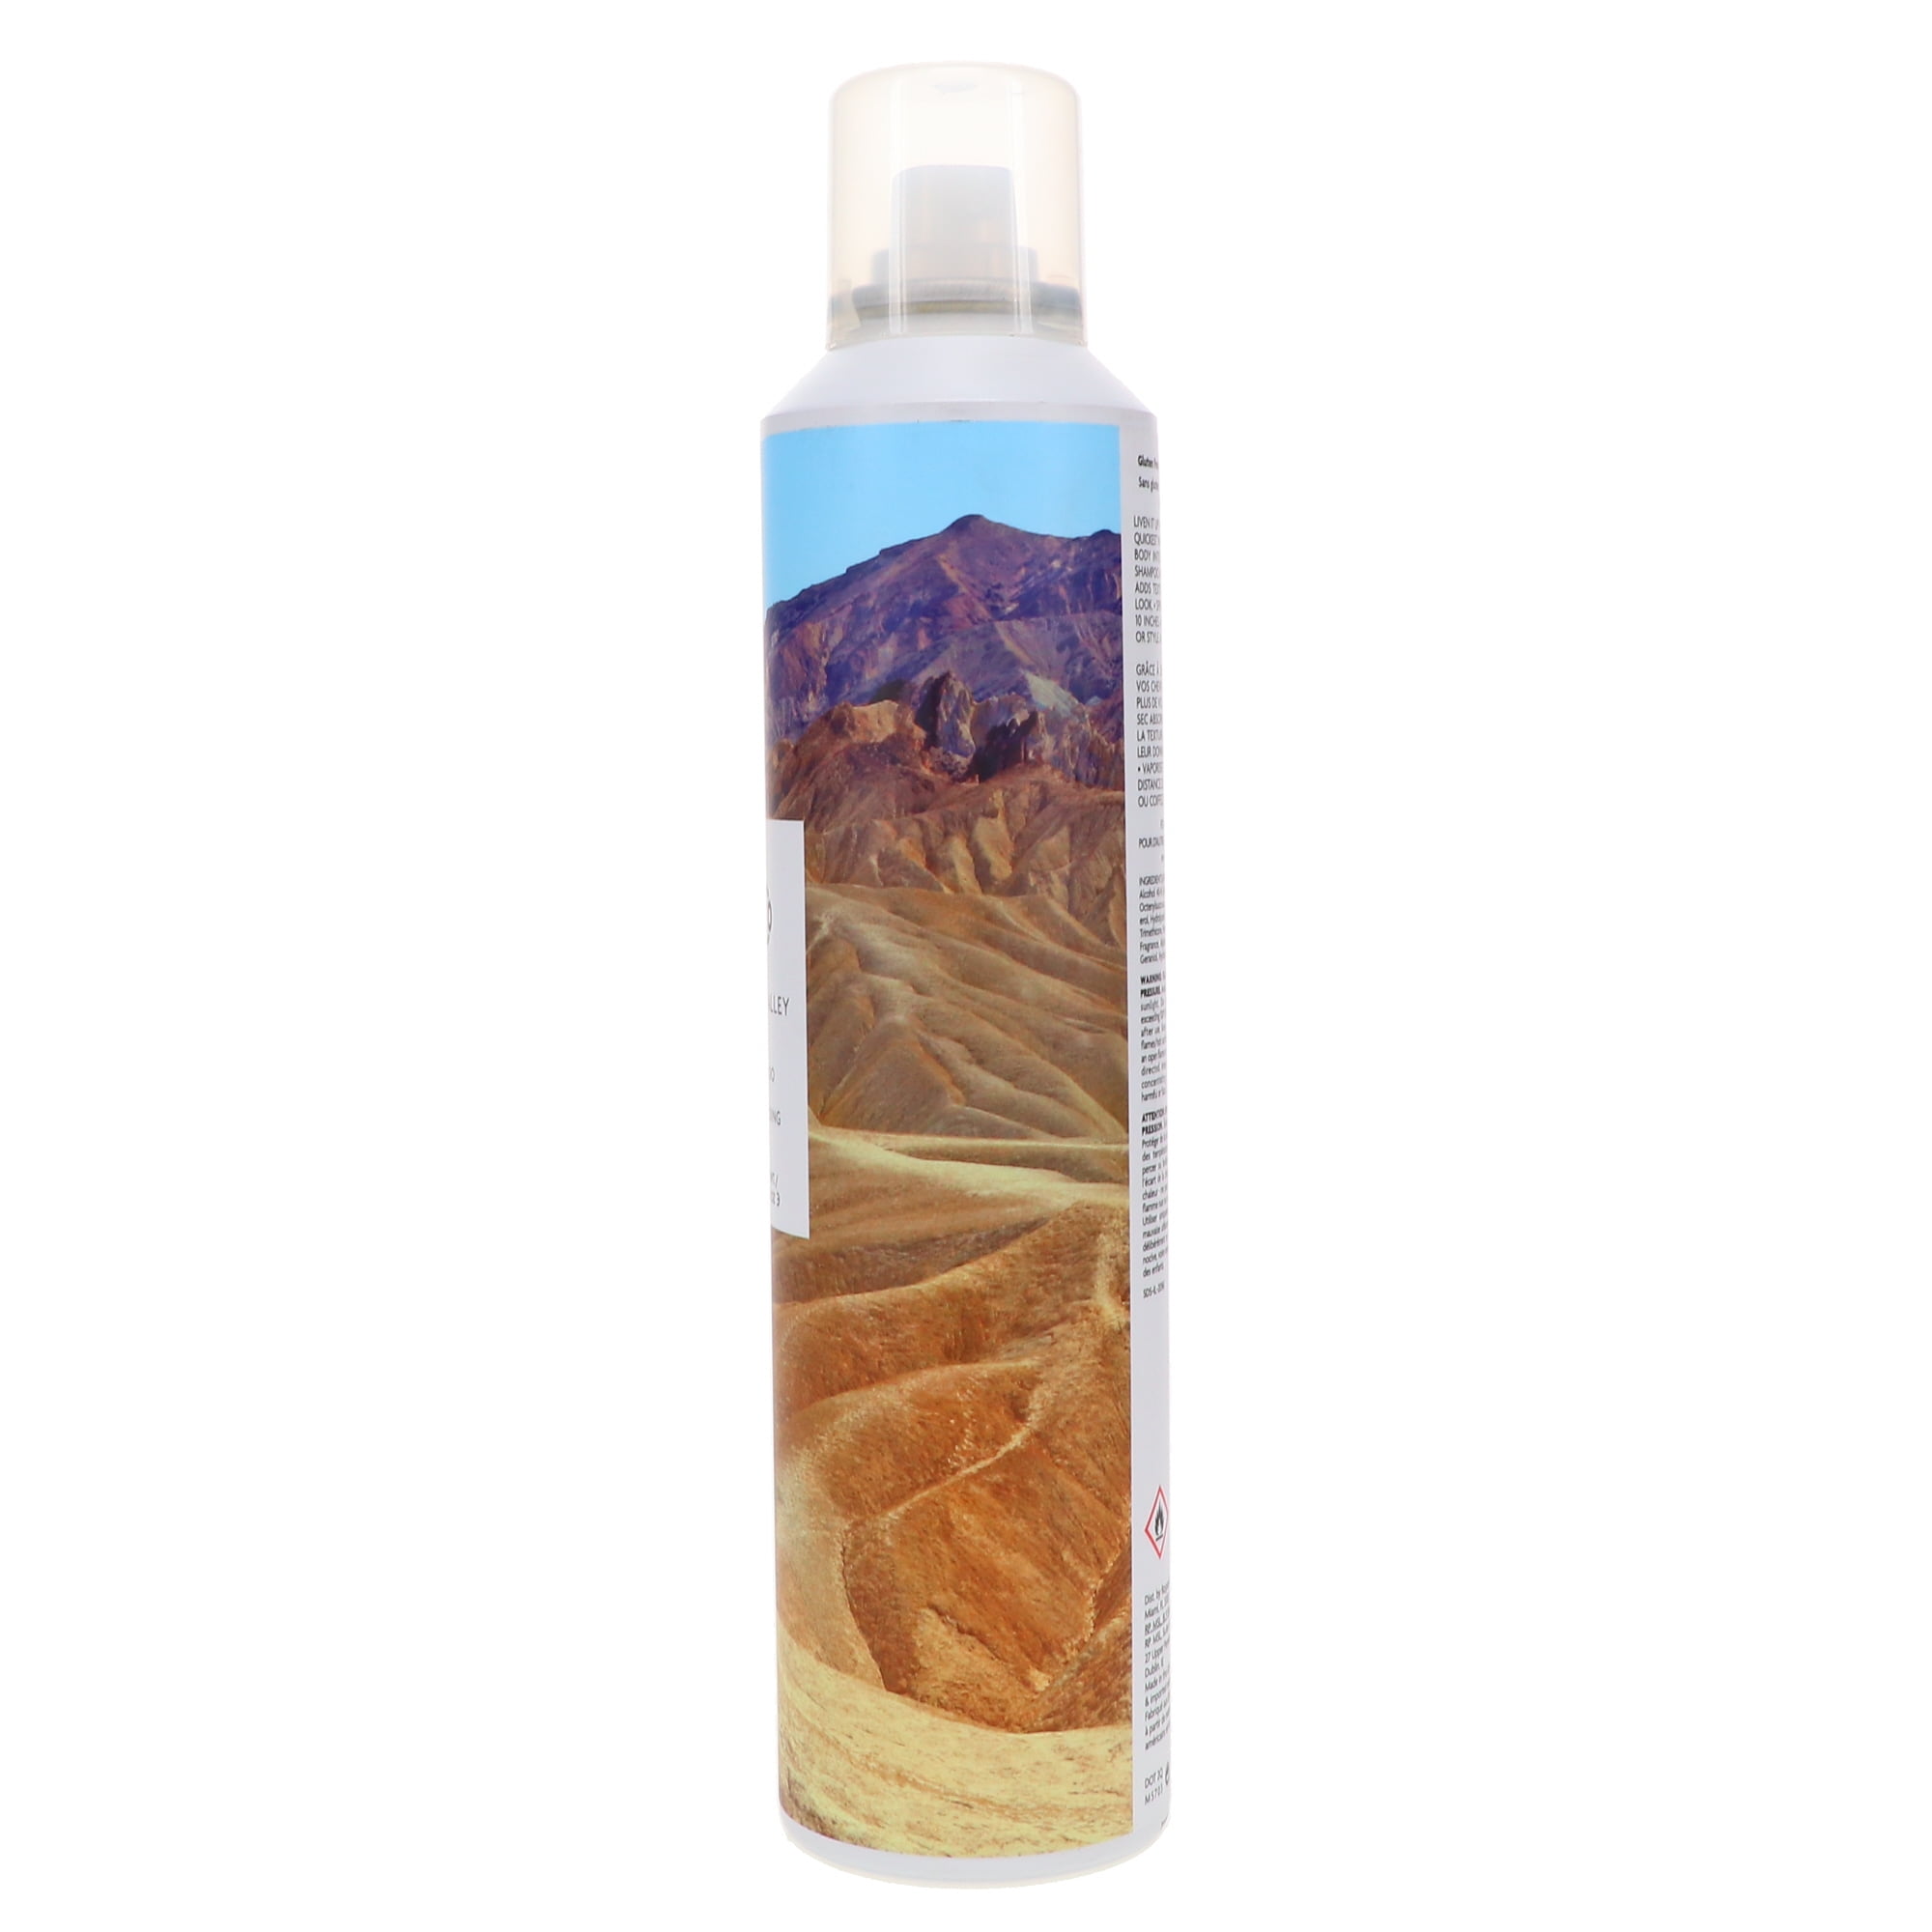 Milepæl fotografering det er smukt R+CO Death Valley Dry Shampoo 6.3 oz - Walmart.com